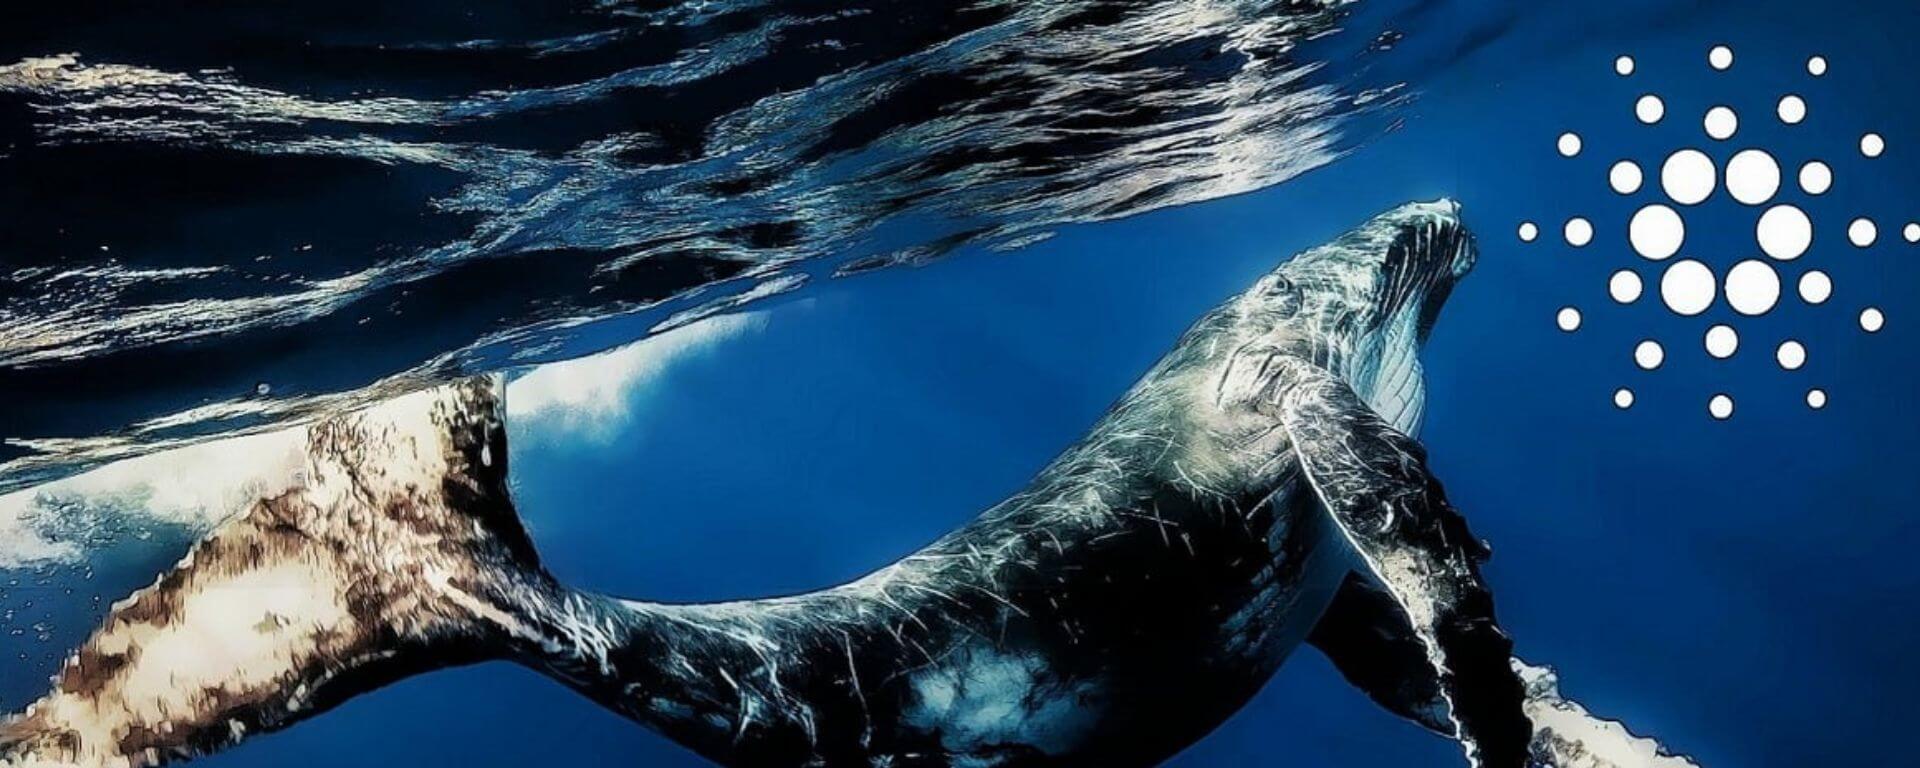 Baleias da Cardano acumulam mais de 560 milhões de ADA em curto período - Webitcoin